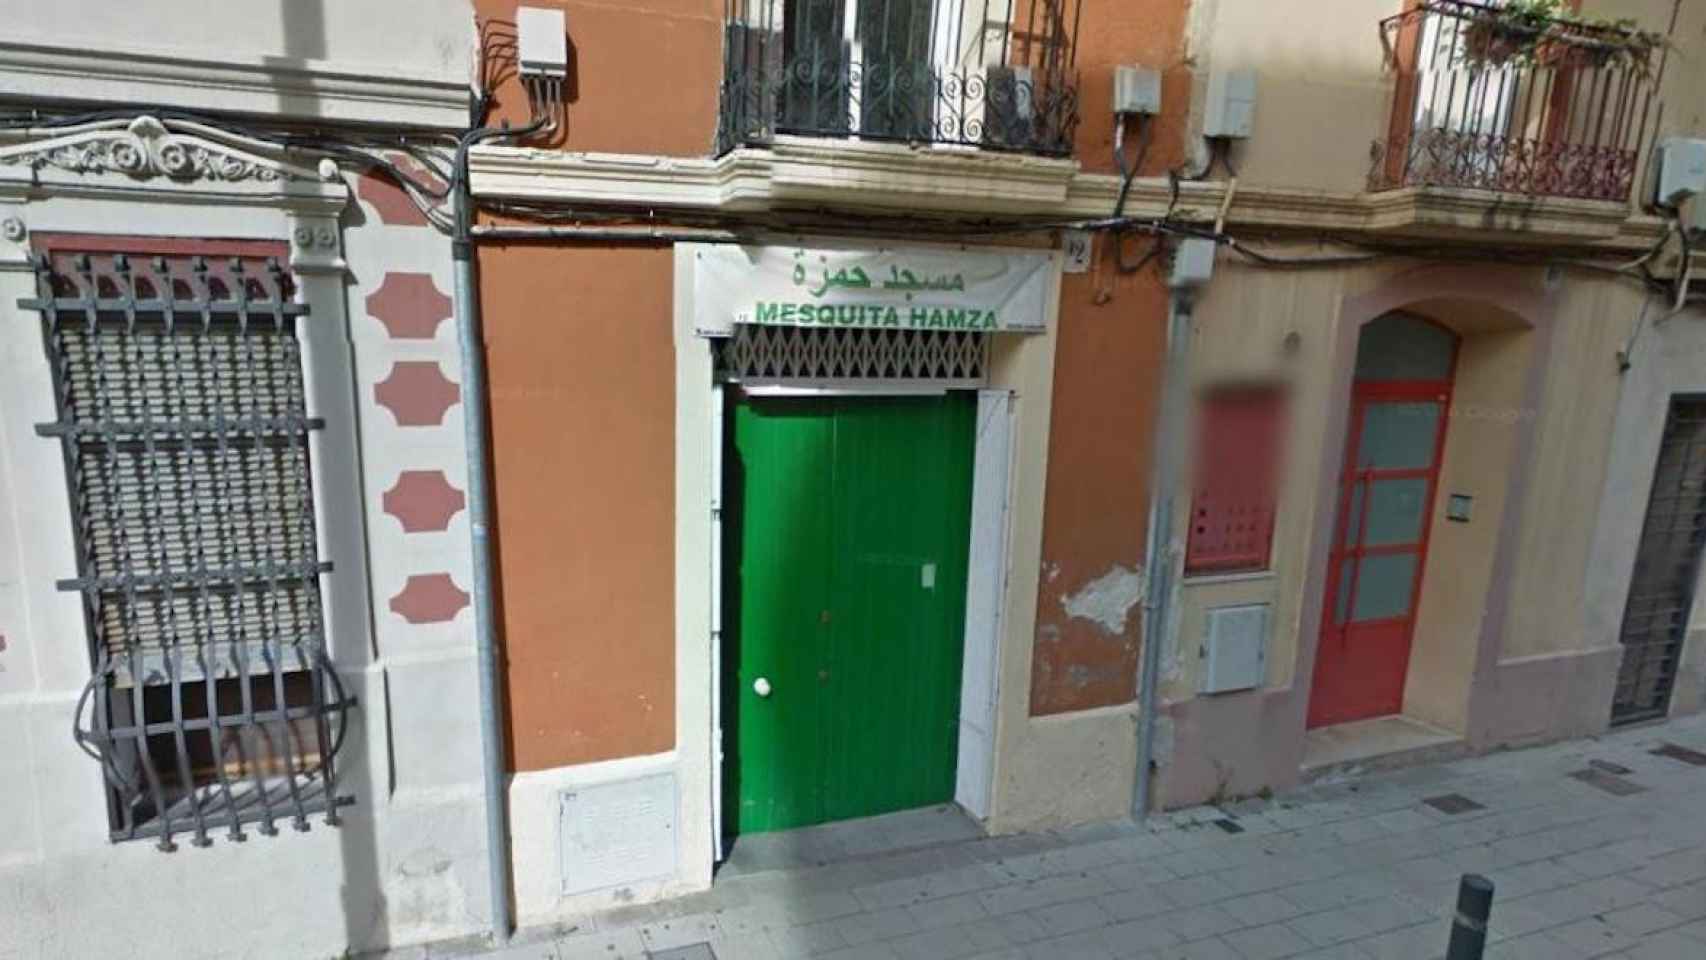 La mezquita situada en El Clot (Barcelona), donde supuestamente el imán violó a un niño / GOOGLE STREET VIEW